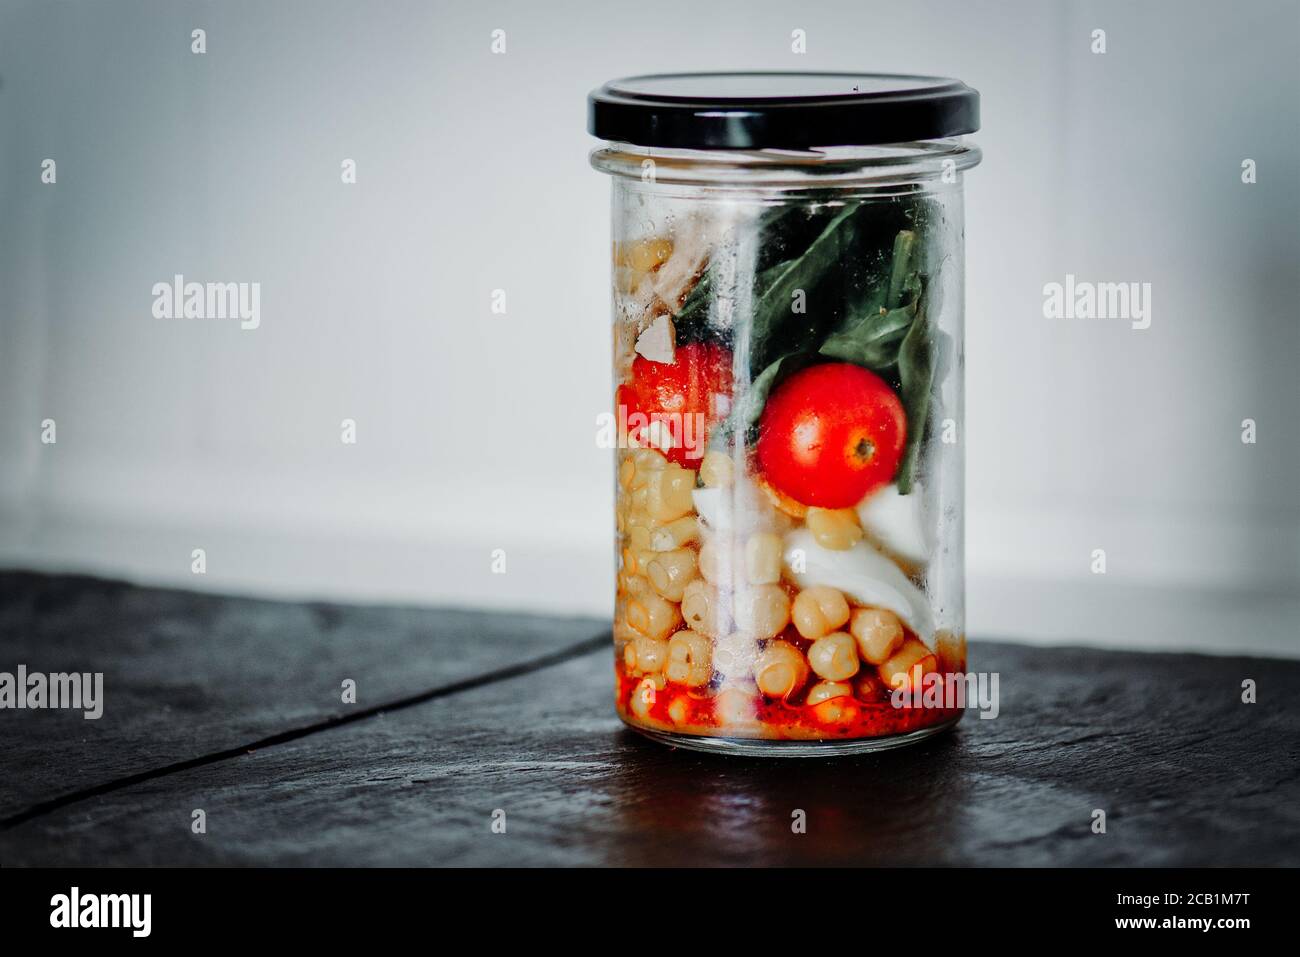 Salade maison dans un pot en verre avec thon et légumes. Alimentation saine, alimentation, désintoxication, concept de manger propre. Bocal santé à emporter. Banque D'Images